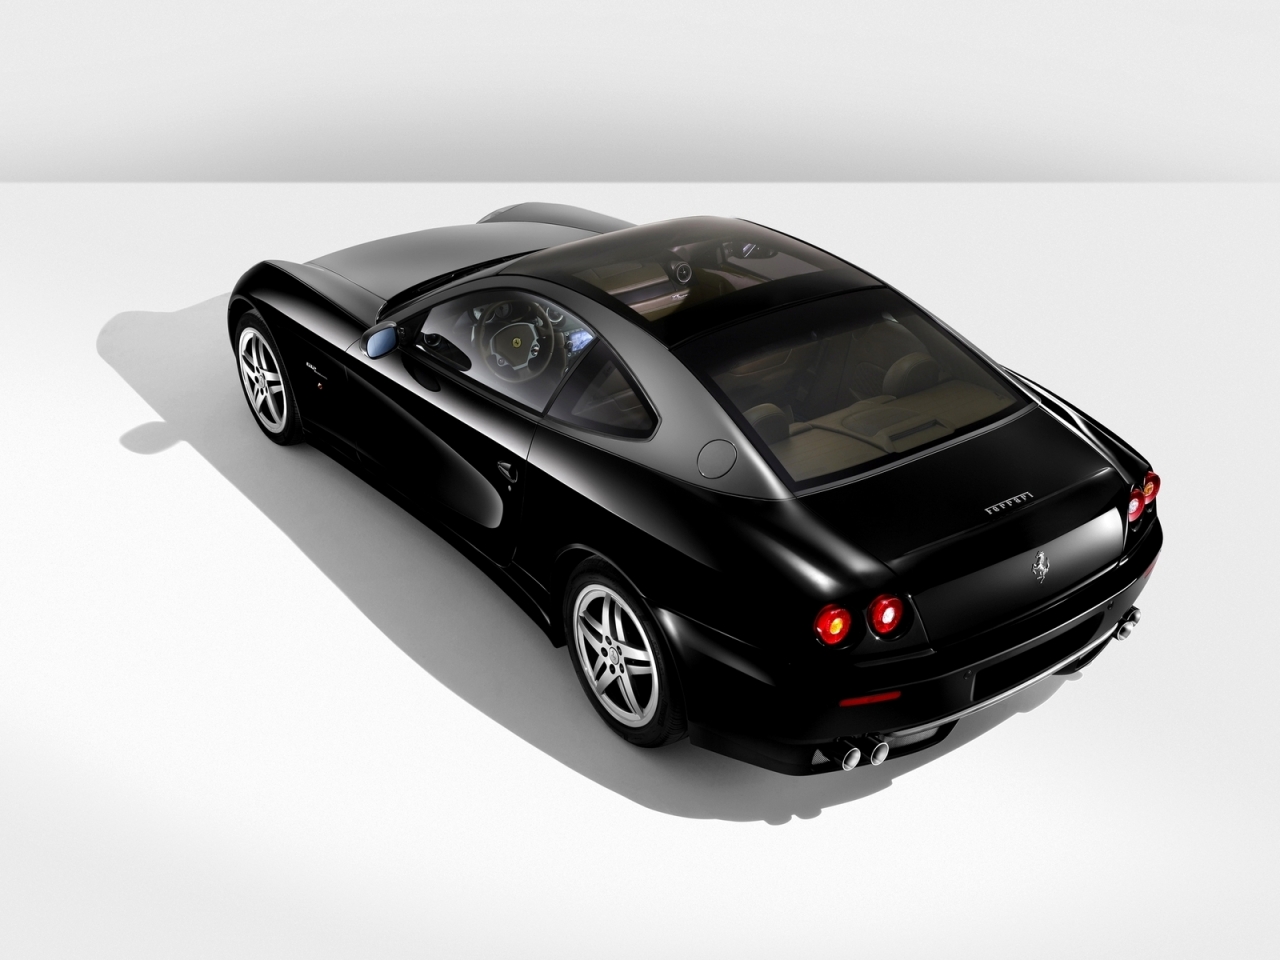 Ferrari 612 Black for 1280 x 960 resolution